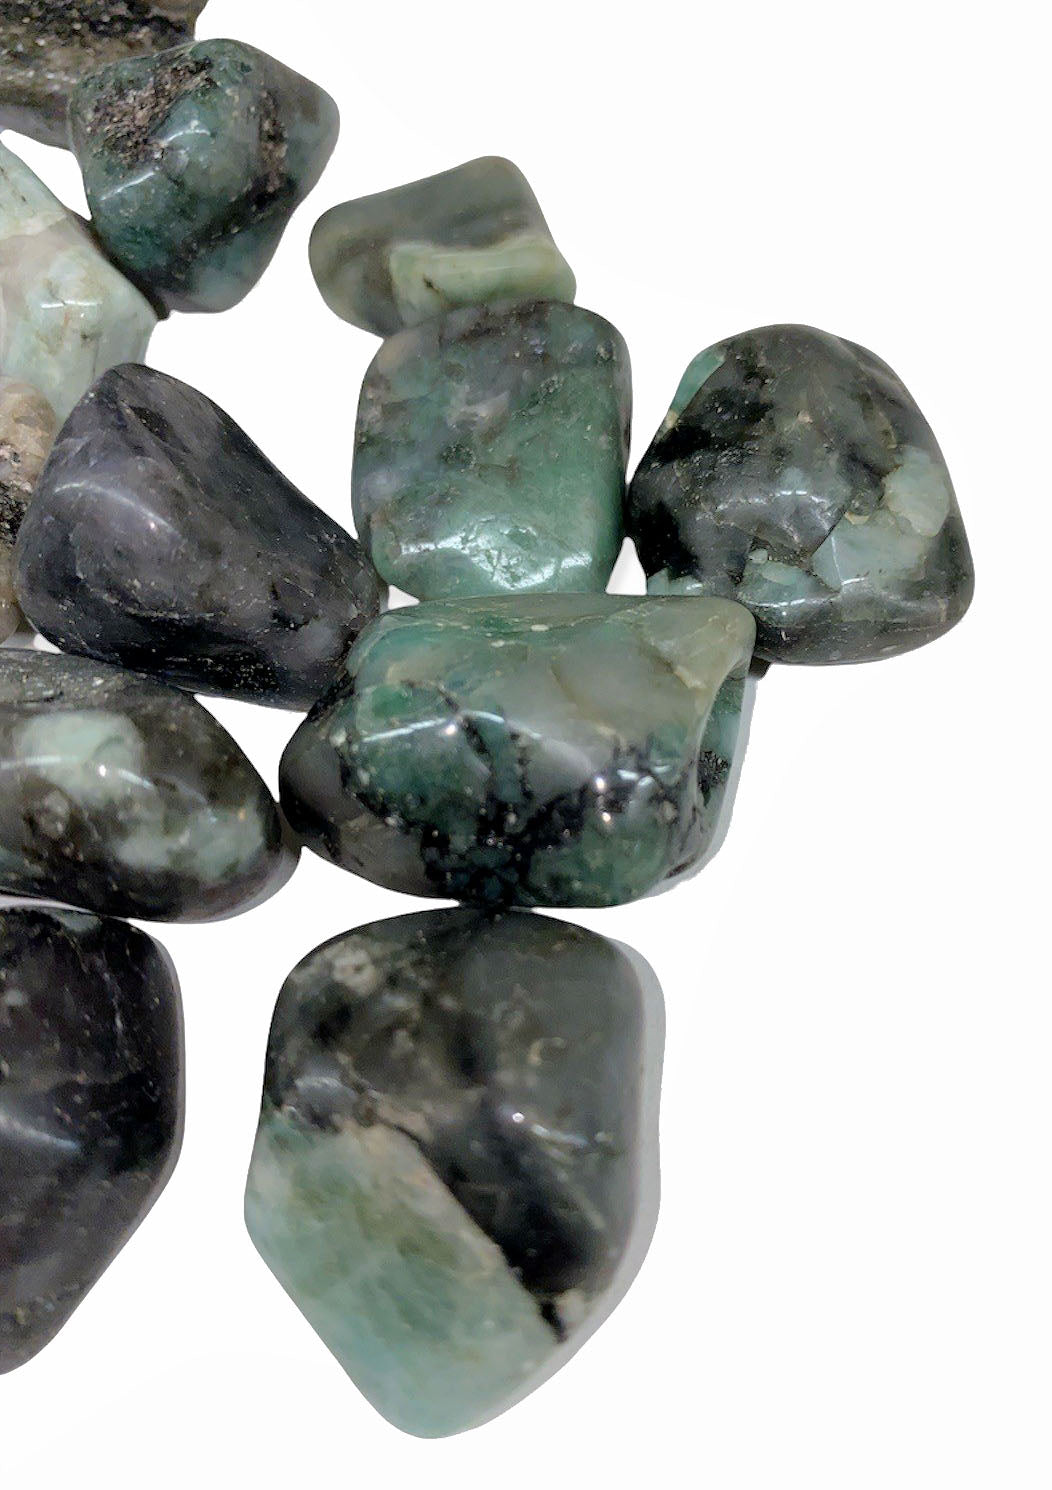 Emerald Quality 1 2A Tumbled Stones - Medium 20 - 30 mm - 1 lb - Brésil - NEW122